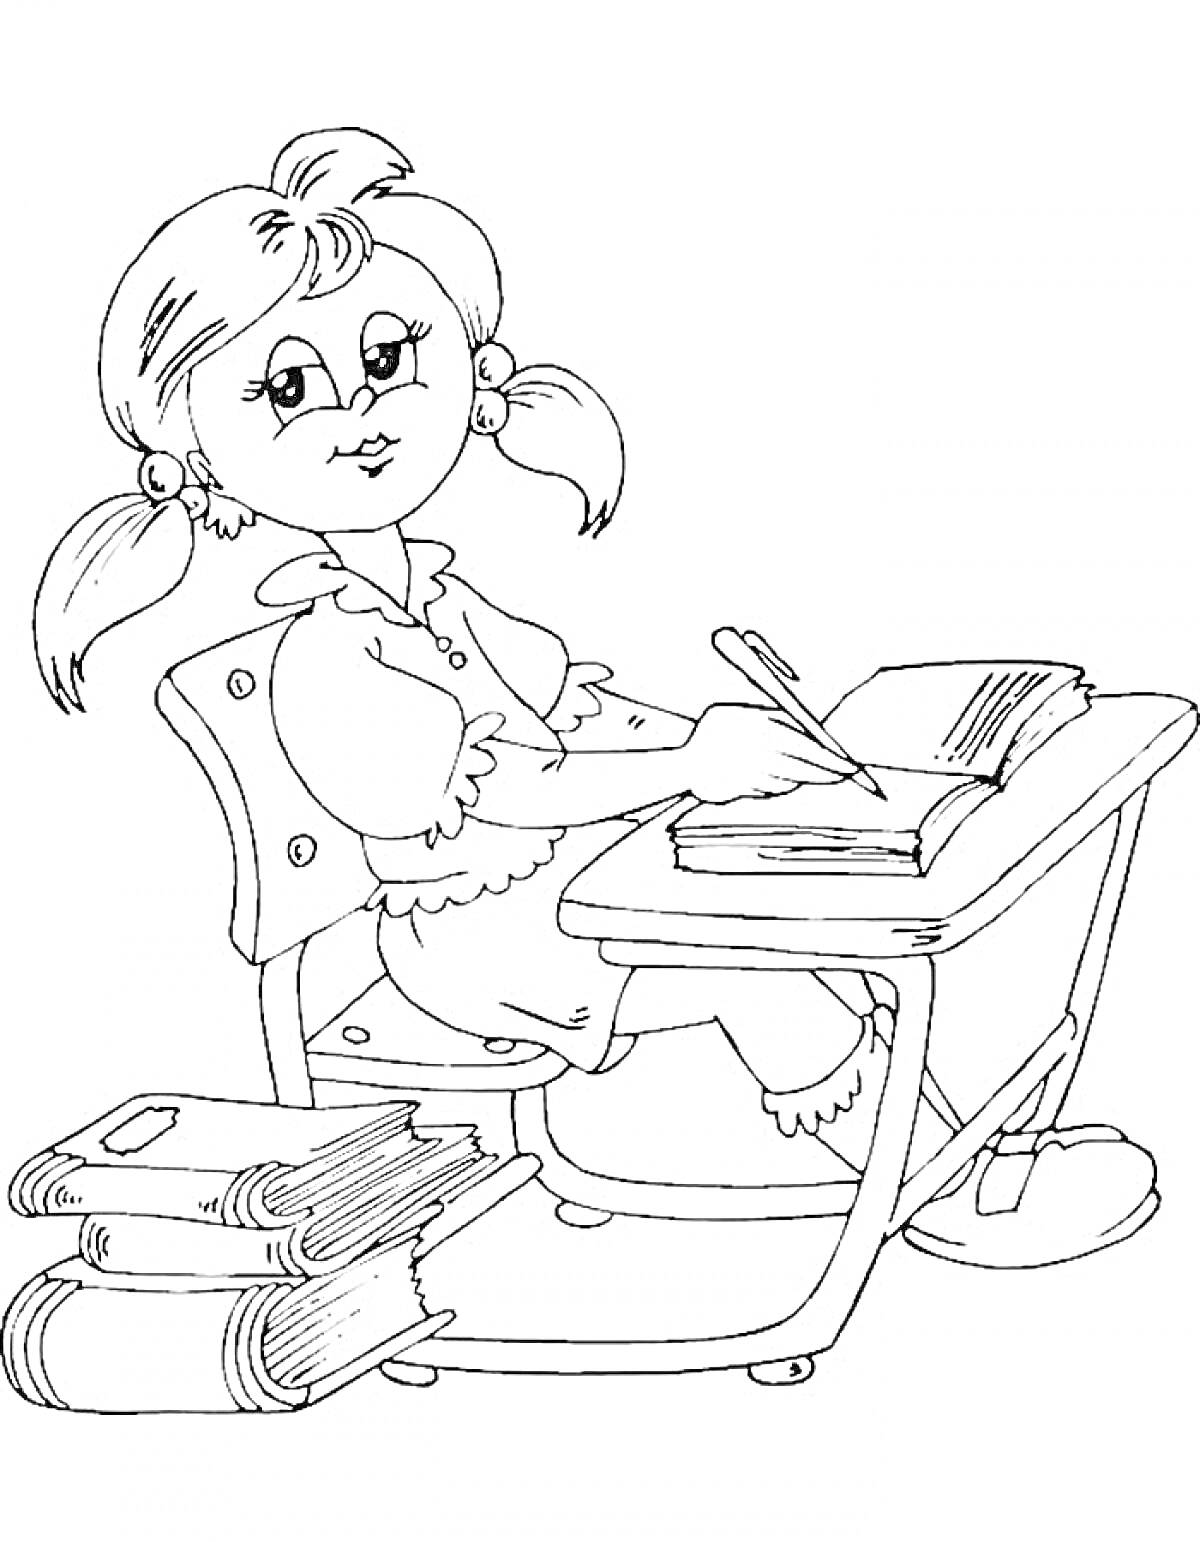 девочка, сидящая за школьной партой, пишет в тетради, со стопкой книг под партой